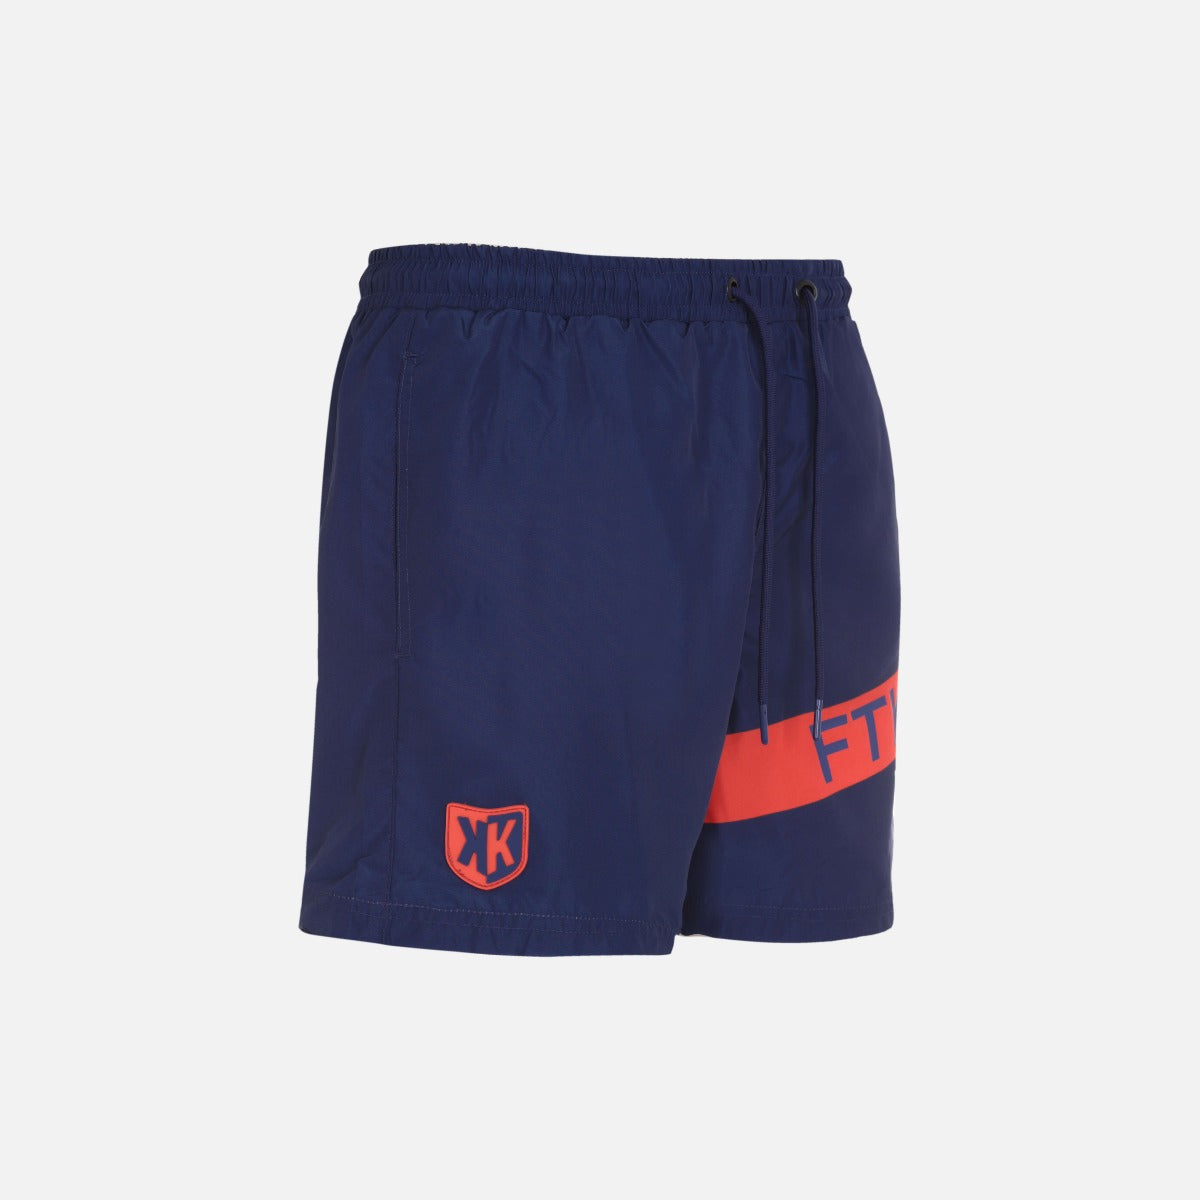 FK Basic Swimsuit - Blue/Orange